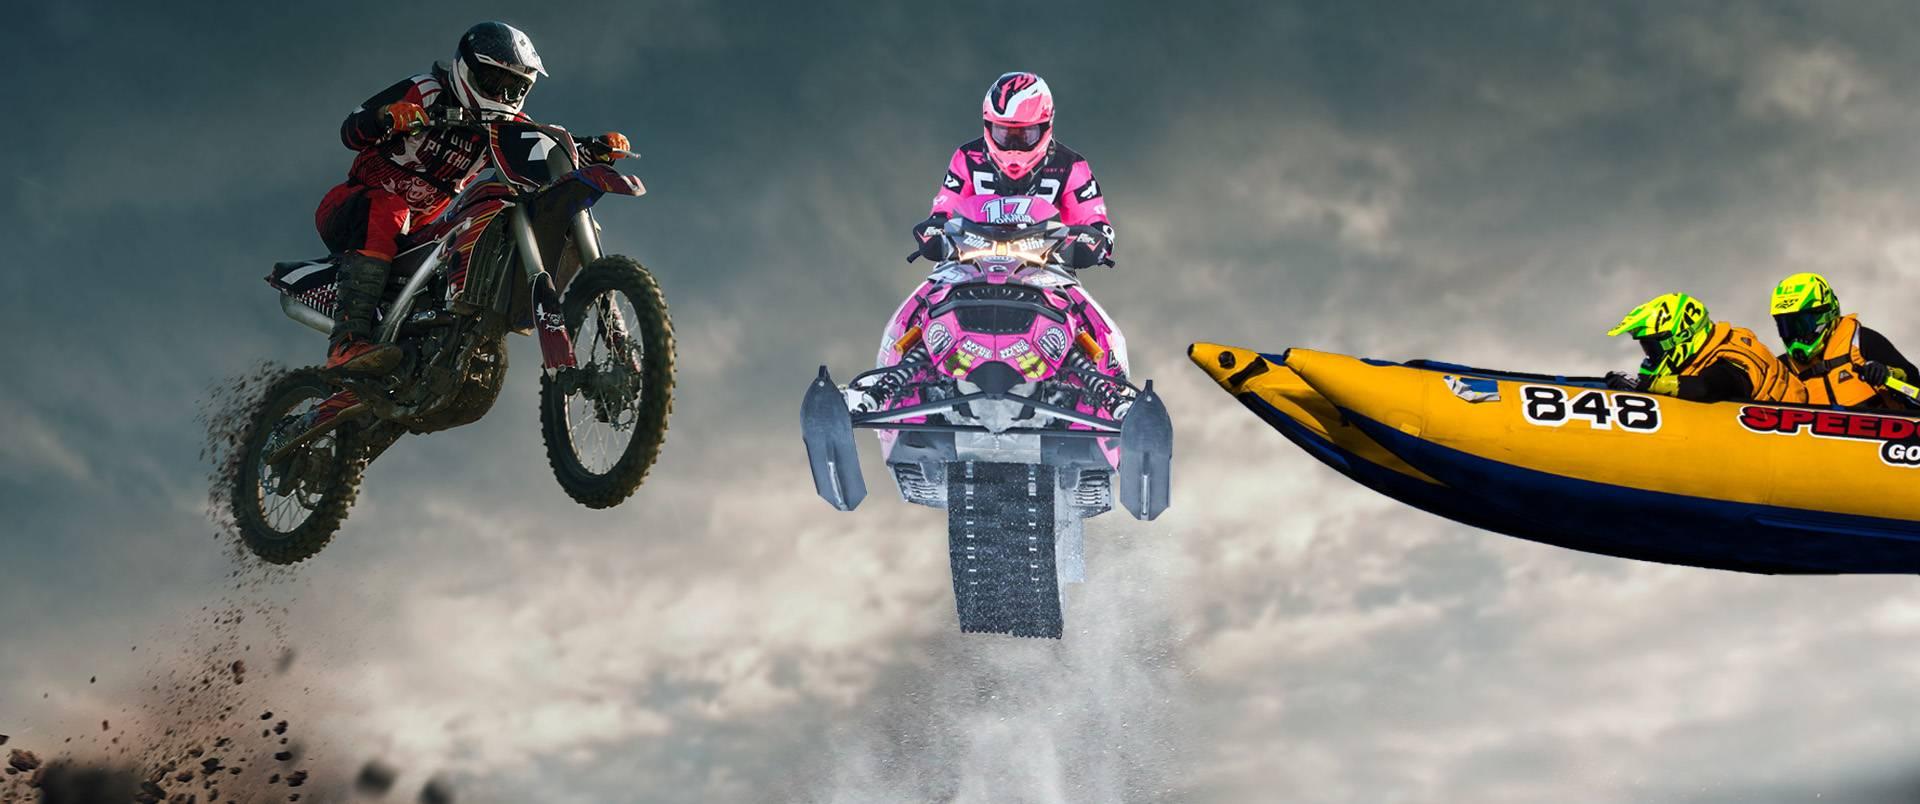 En motocross, en snöskoter och en racerbåt i luften och koncentrerade förare. En actionfylld bild.